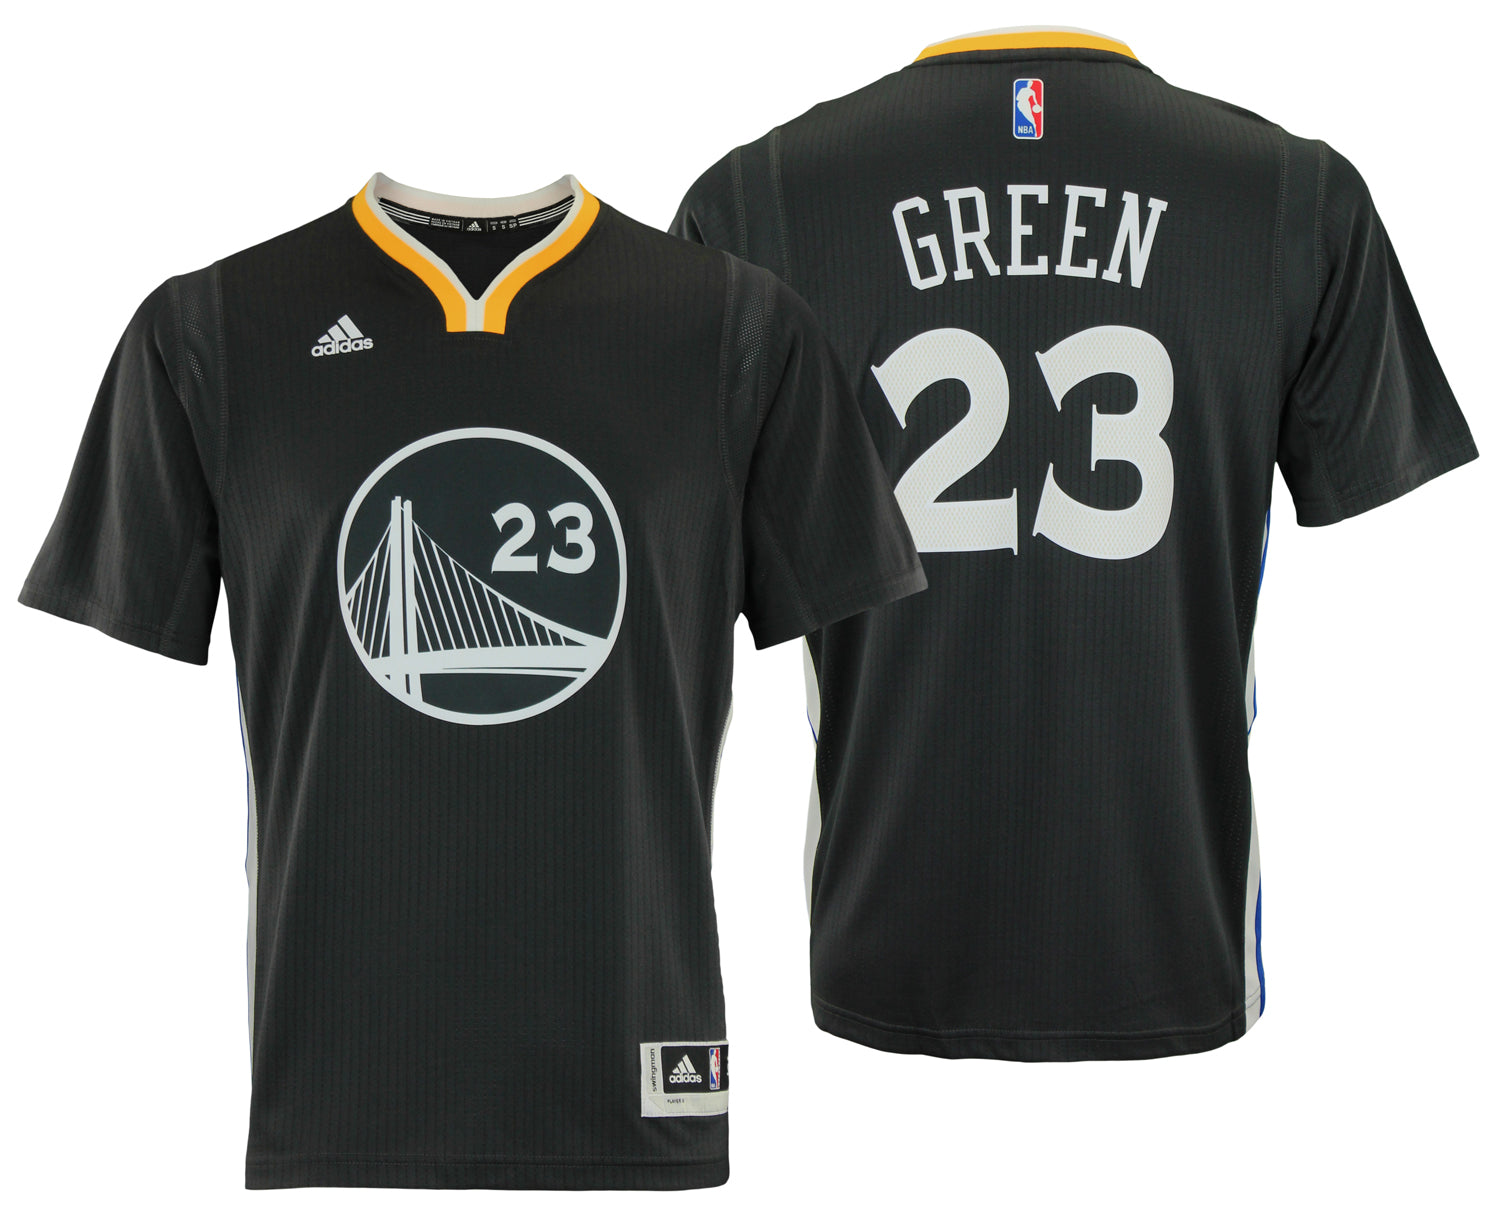 Draymond Green Golden State Warriors #23 Jersey player shirt